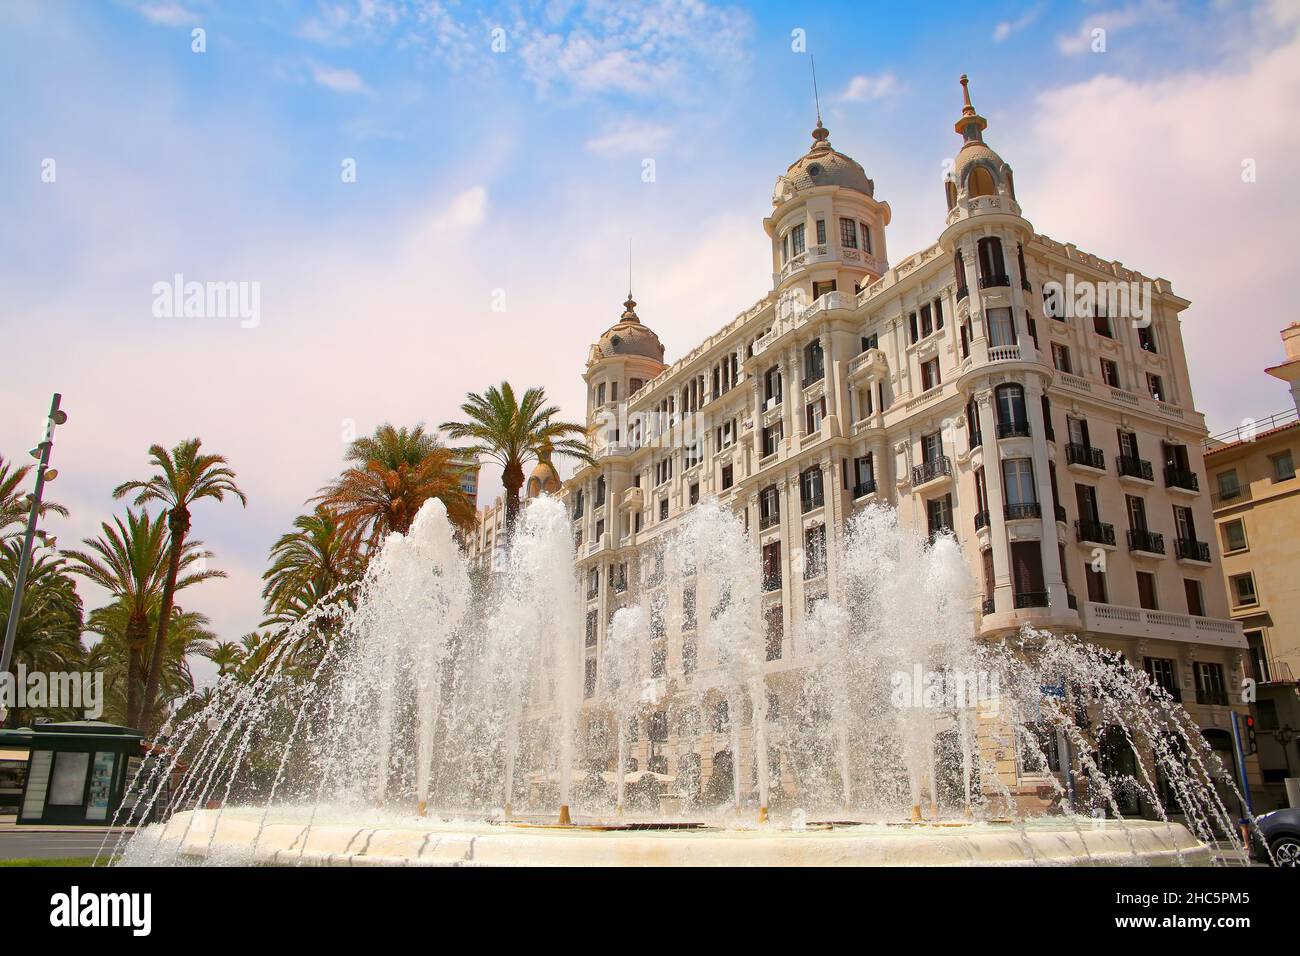 Bella fontana d'acqua lungo il lungomare della città con edifici storici tradizionali. Explanada de Espana con palme, Alicante, Spagna. Foto Stock